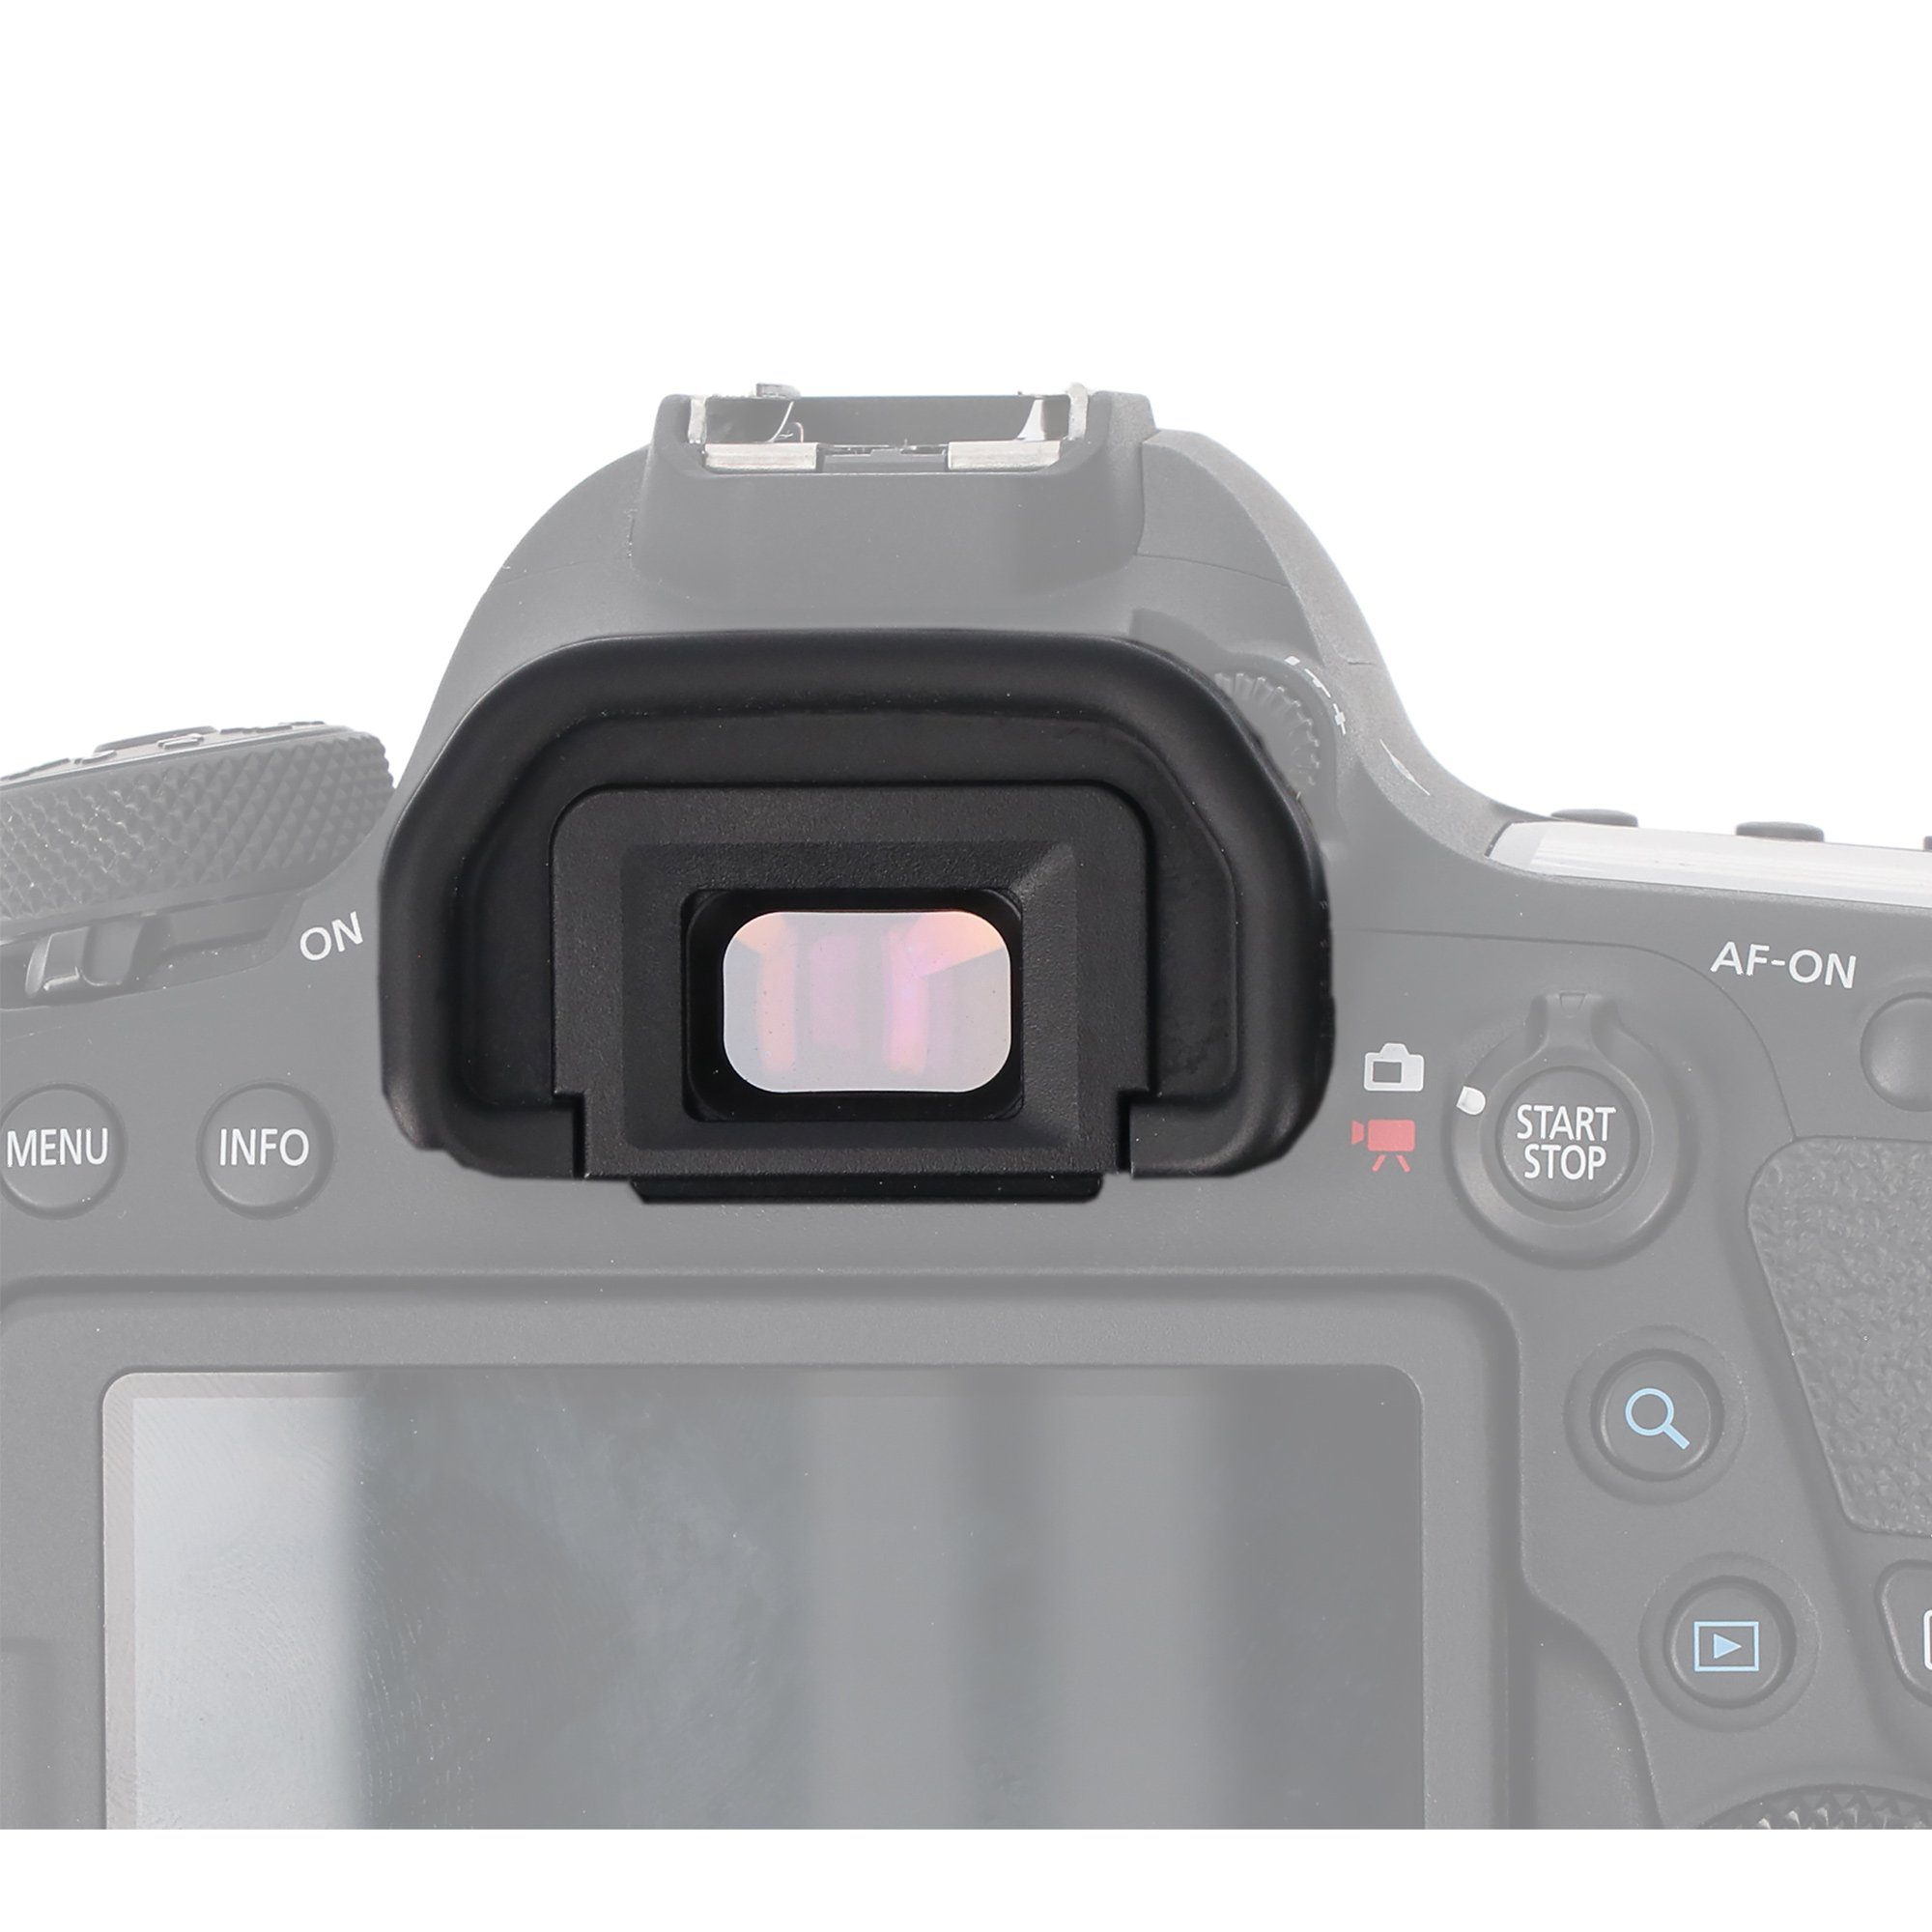 EG 7D 1D EOS Aufstecksucher 3 Augenmuschel 3 X 1D Canon Cup 5D Mark Sucher ayex Mark Eye